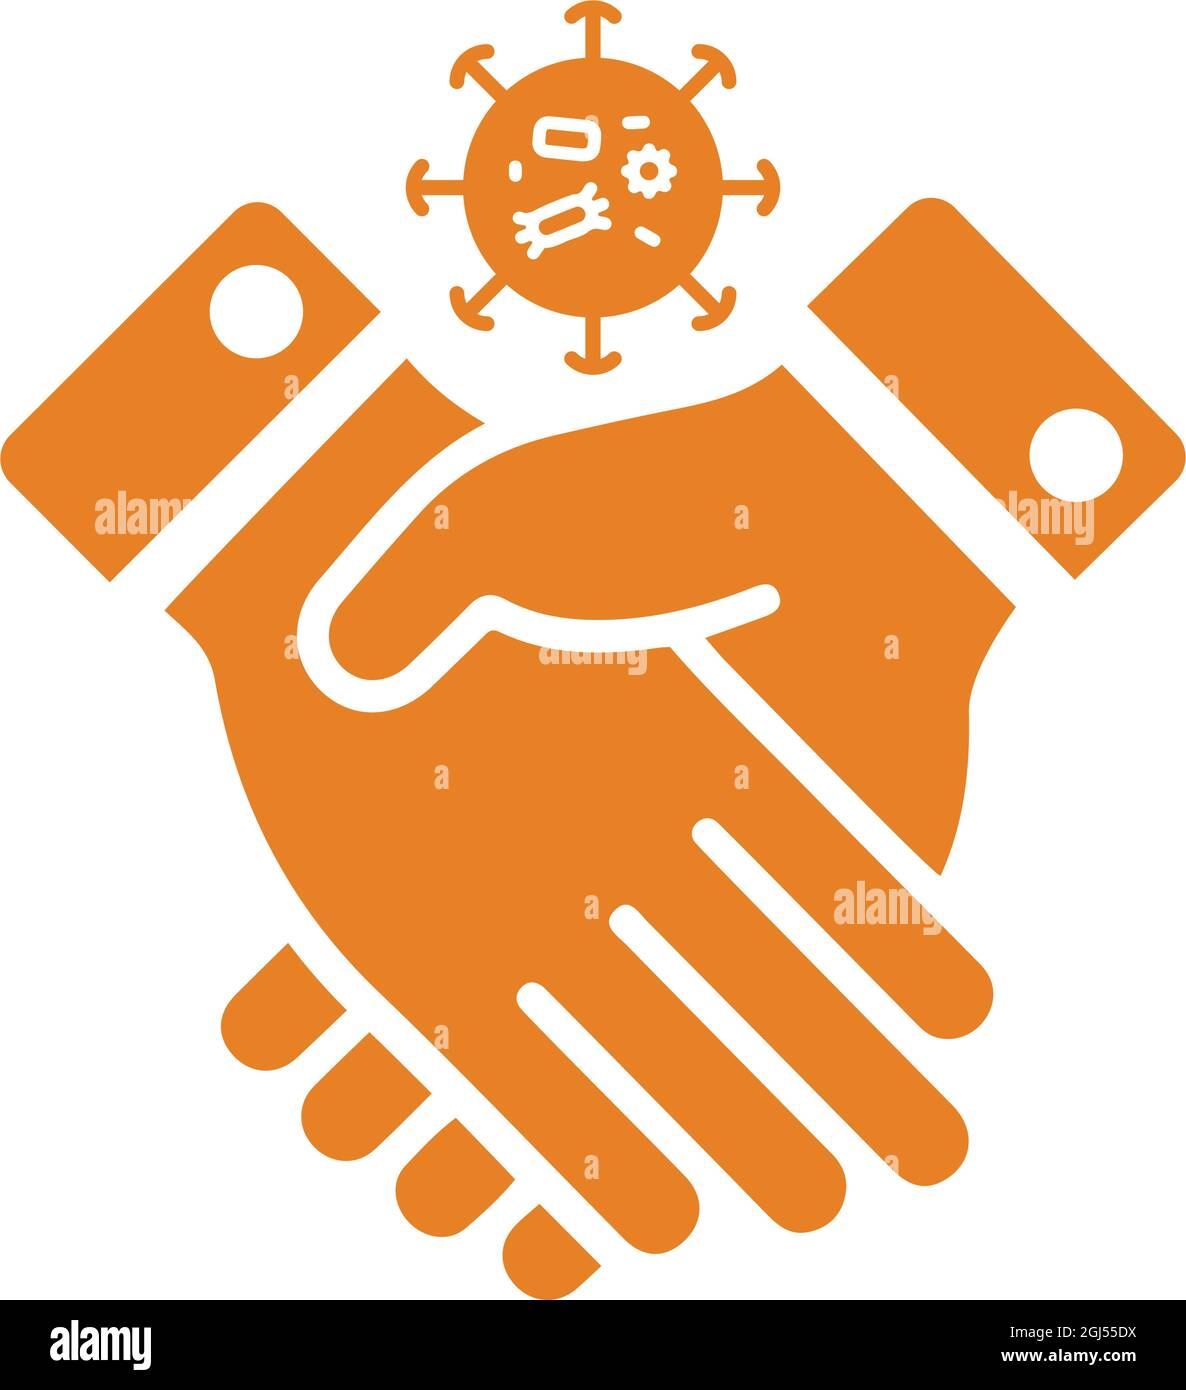 L'icona del contagio, del coronavirus, della stretta di mano è isolata su sfondo bianco. Utilizzo per grafica e web design o scopi commerciali. File EPS vettoriale. Illustrazione Vettoriale